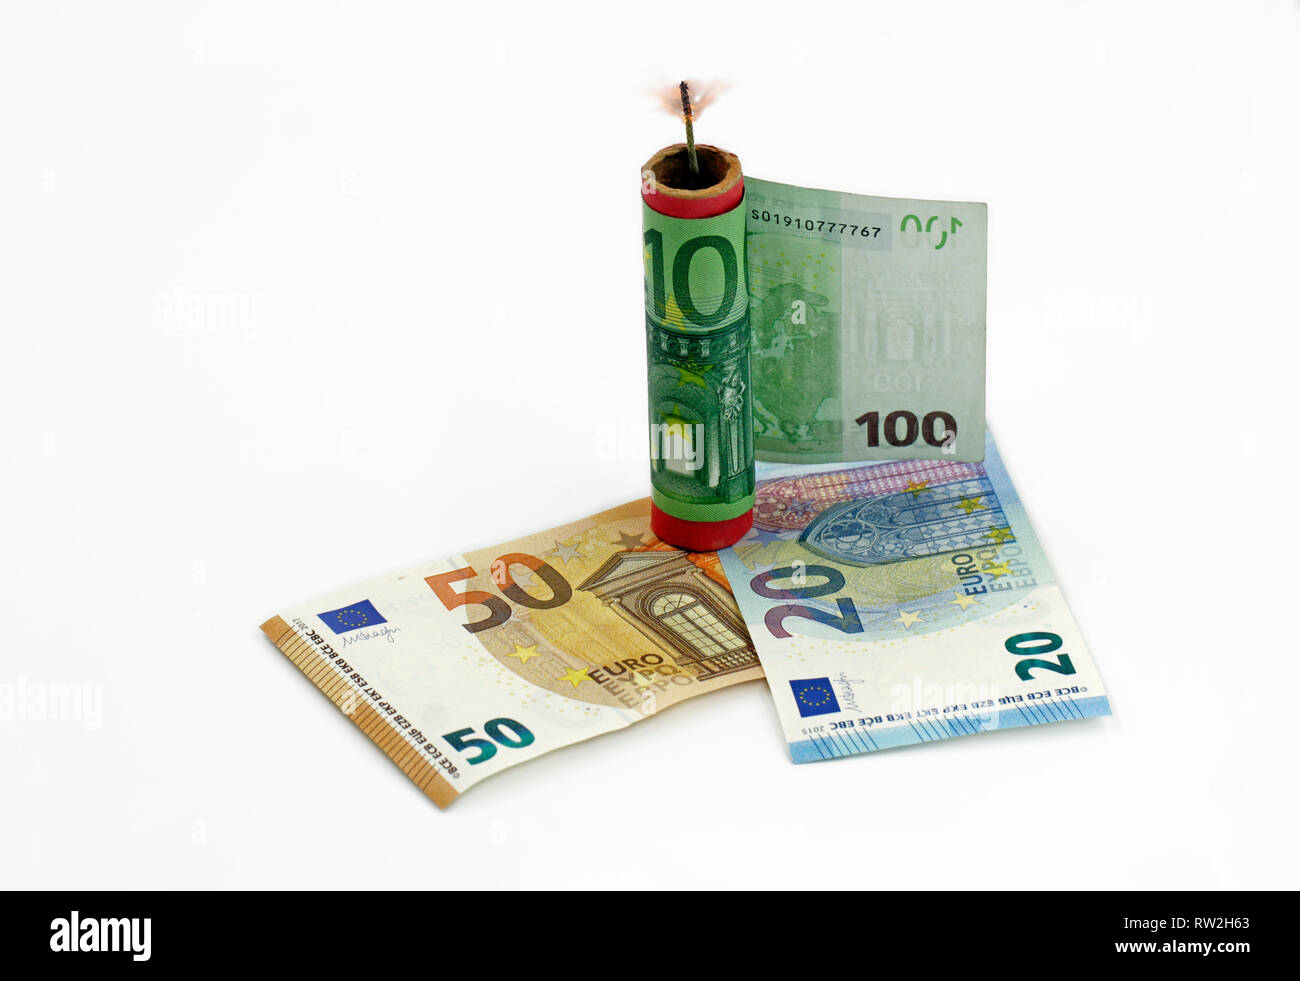 Billet d'euro, de l'argent autour d'un pétard avec une mèche, brûlant des déchets concept d'argent à silvester Banque D'Images